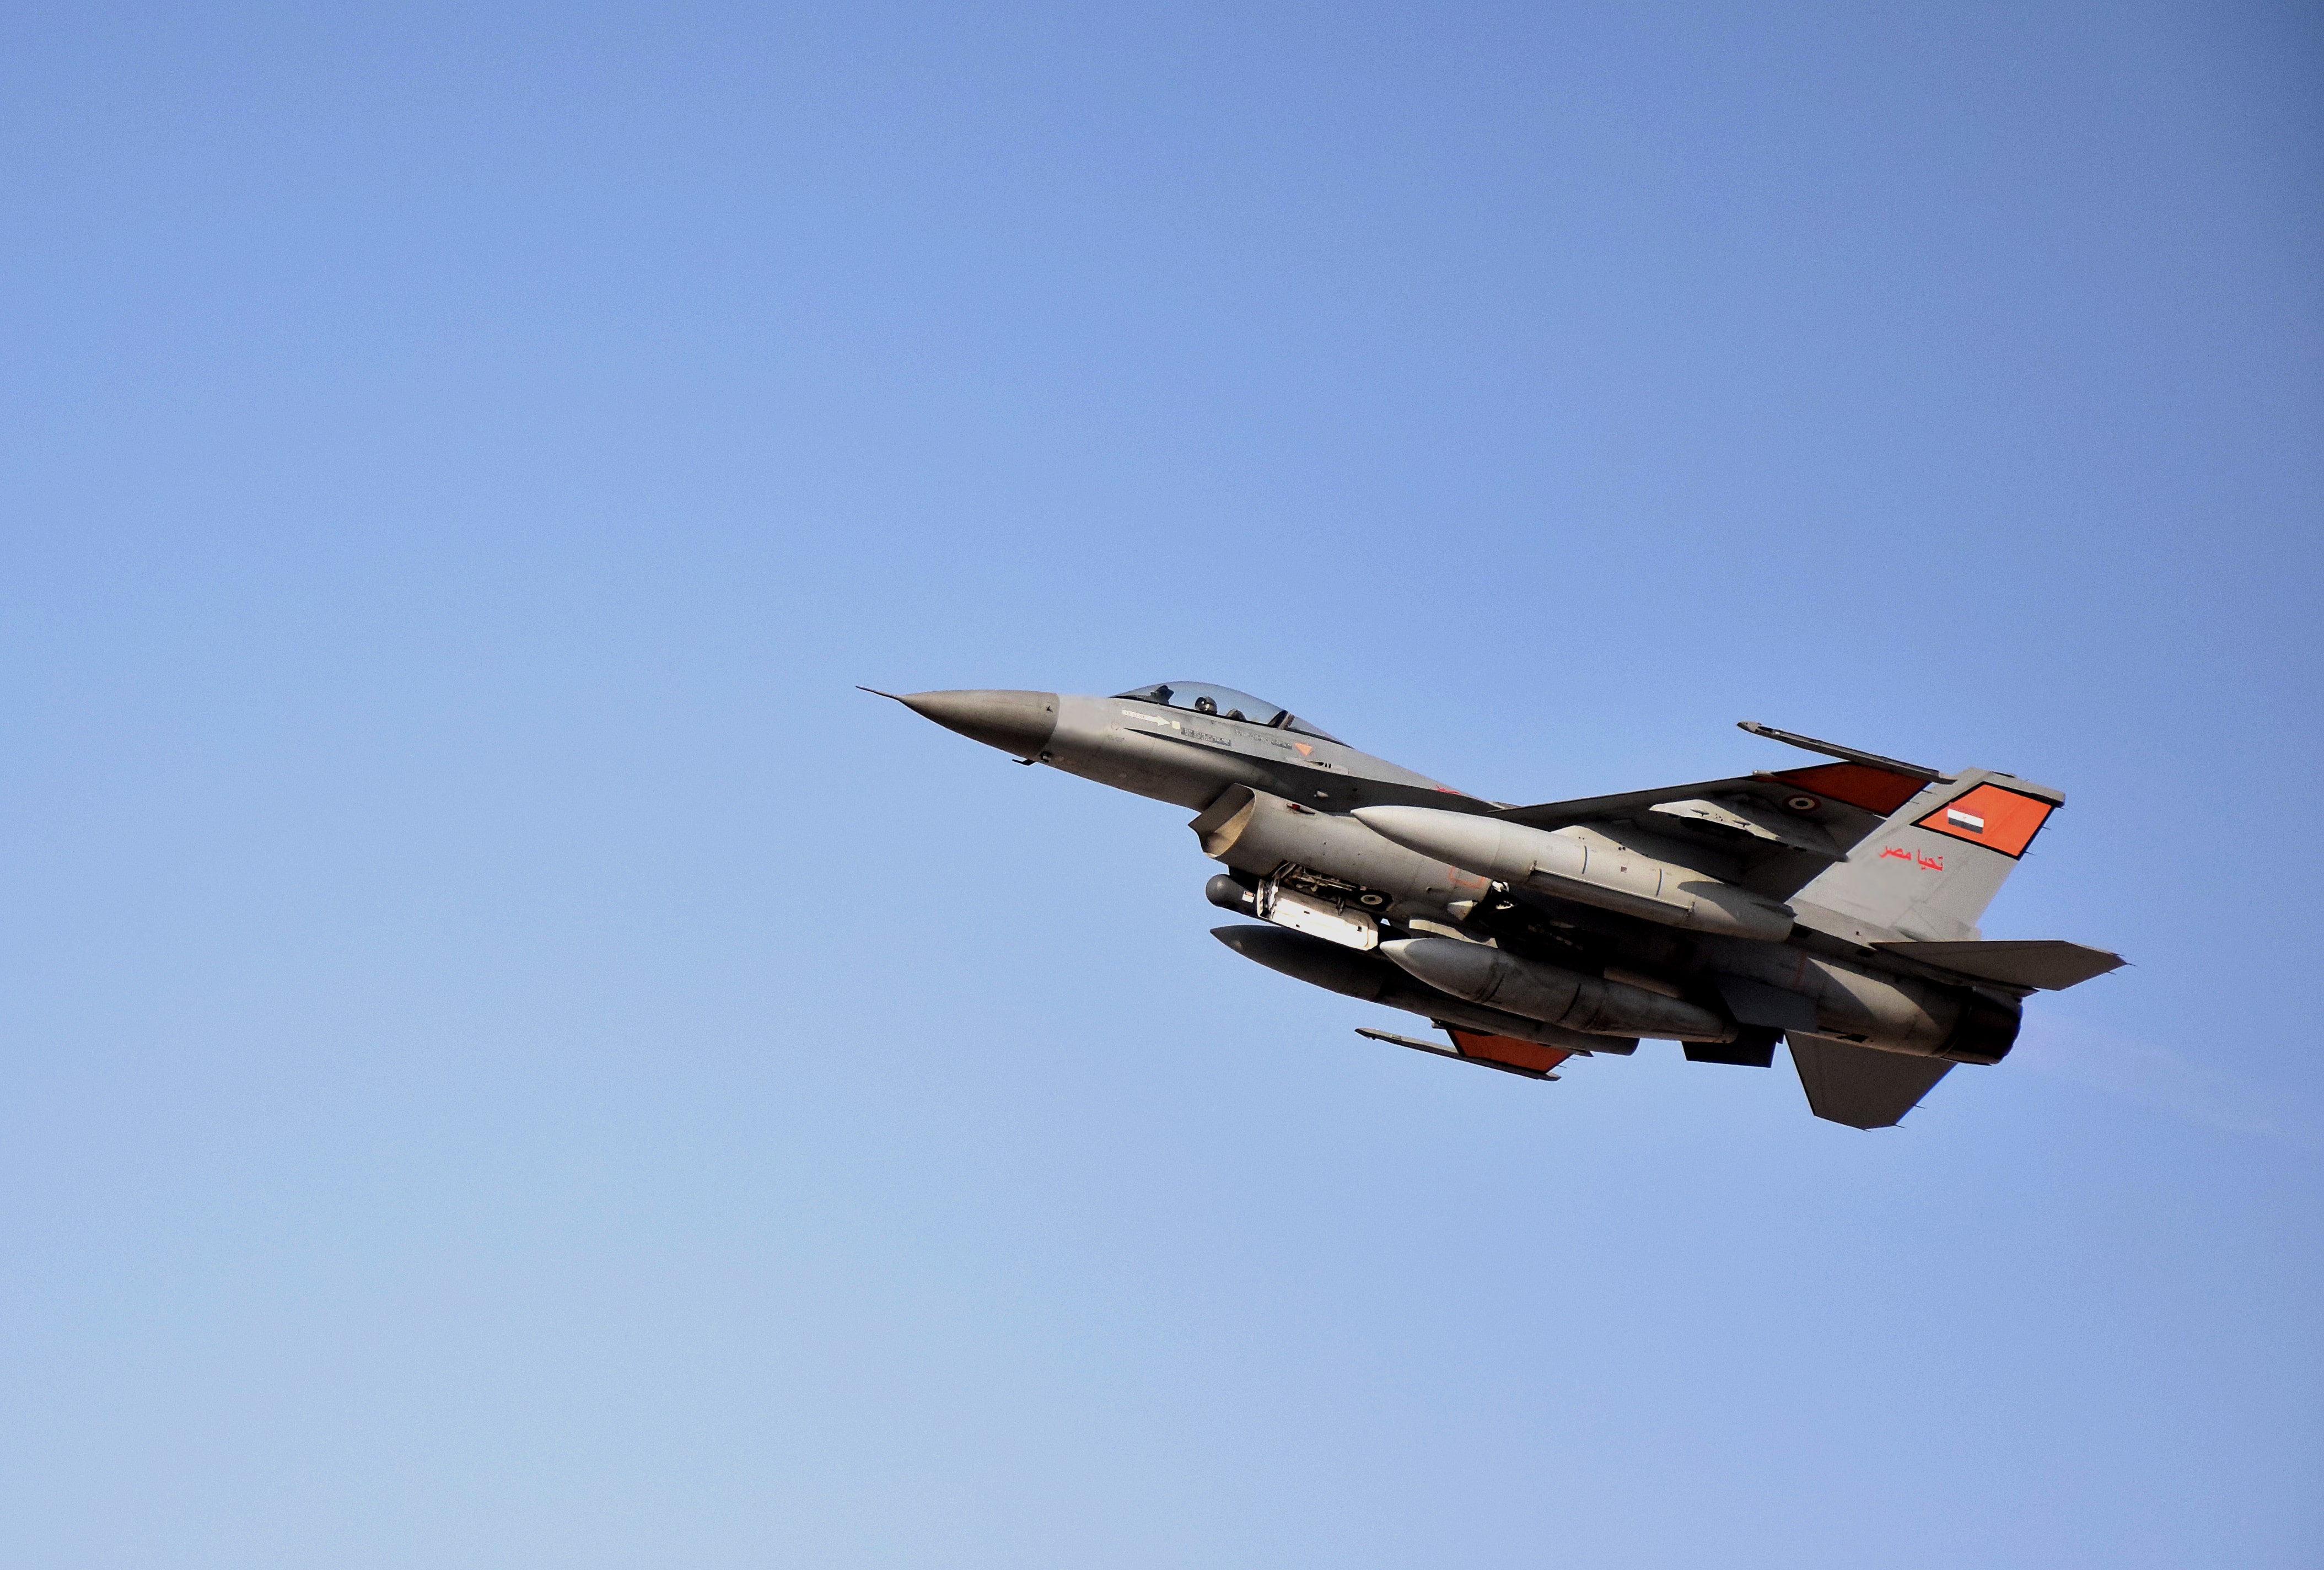 القوات الجوية المصرية واليونانية تنفذان تدريباً جوياً بإحدى القواعد اليونانية (2)